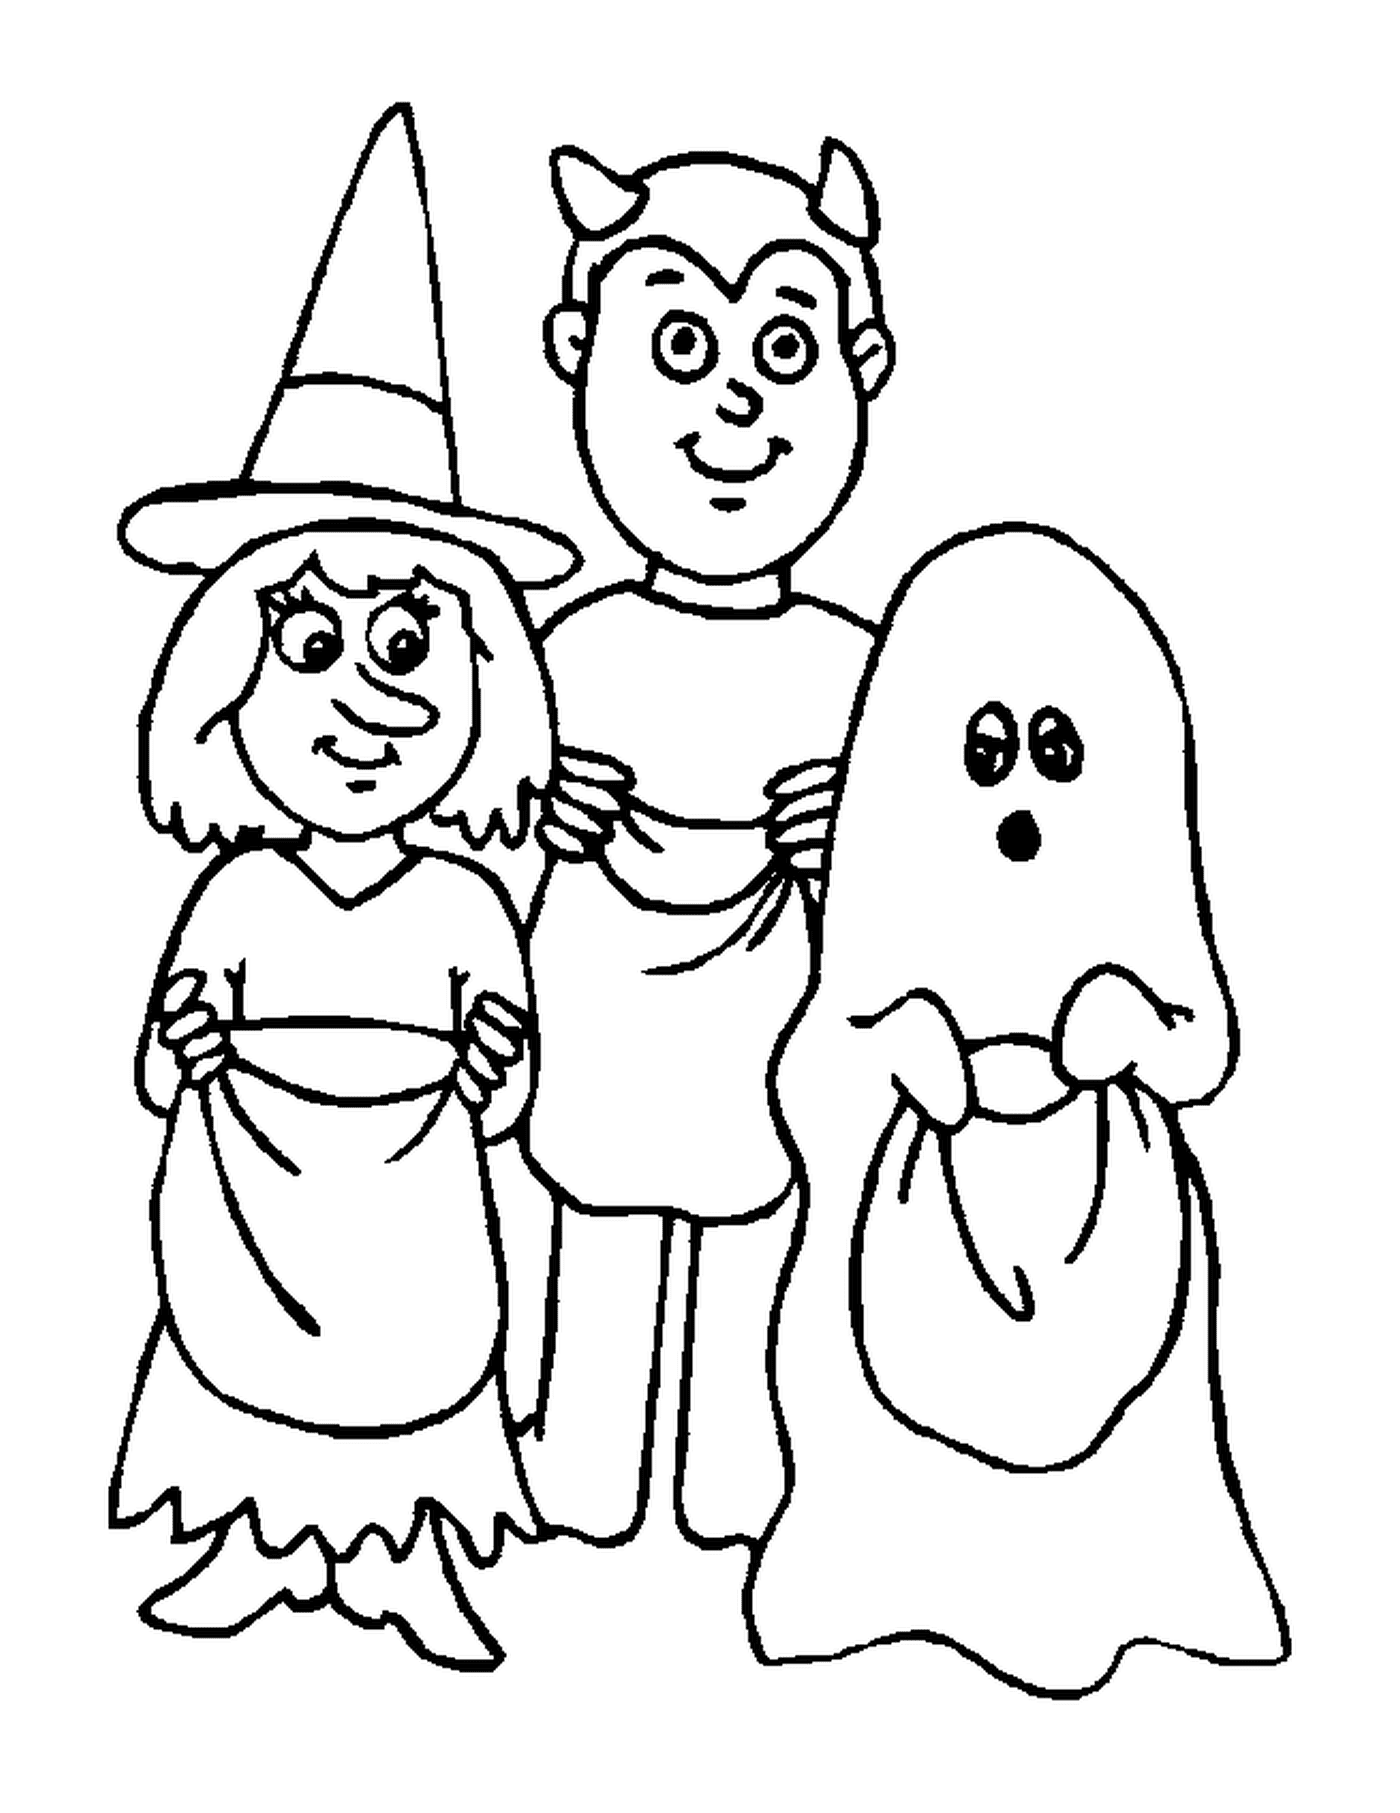  мужчина, женщина и призрак, замаскированные, чтобы напугать Хэллоуин 